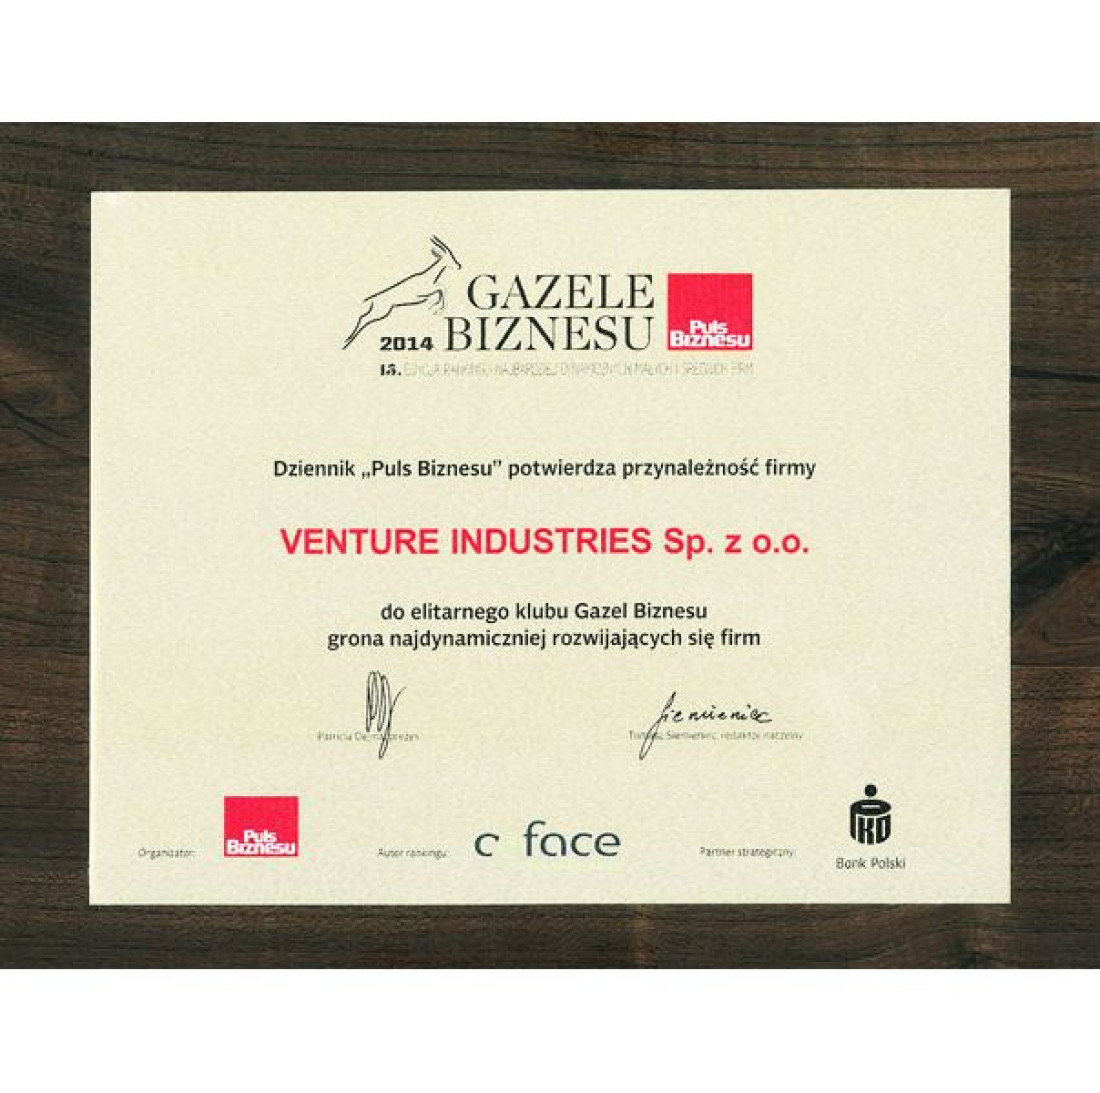 Gazele Biznesu 2014 dla Venture Industries